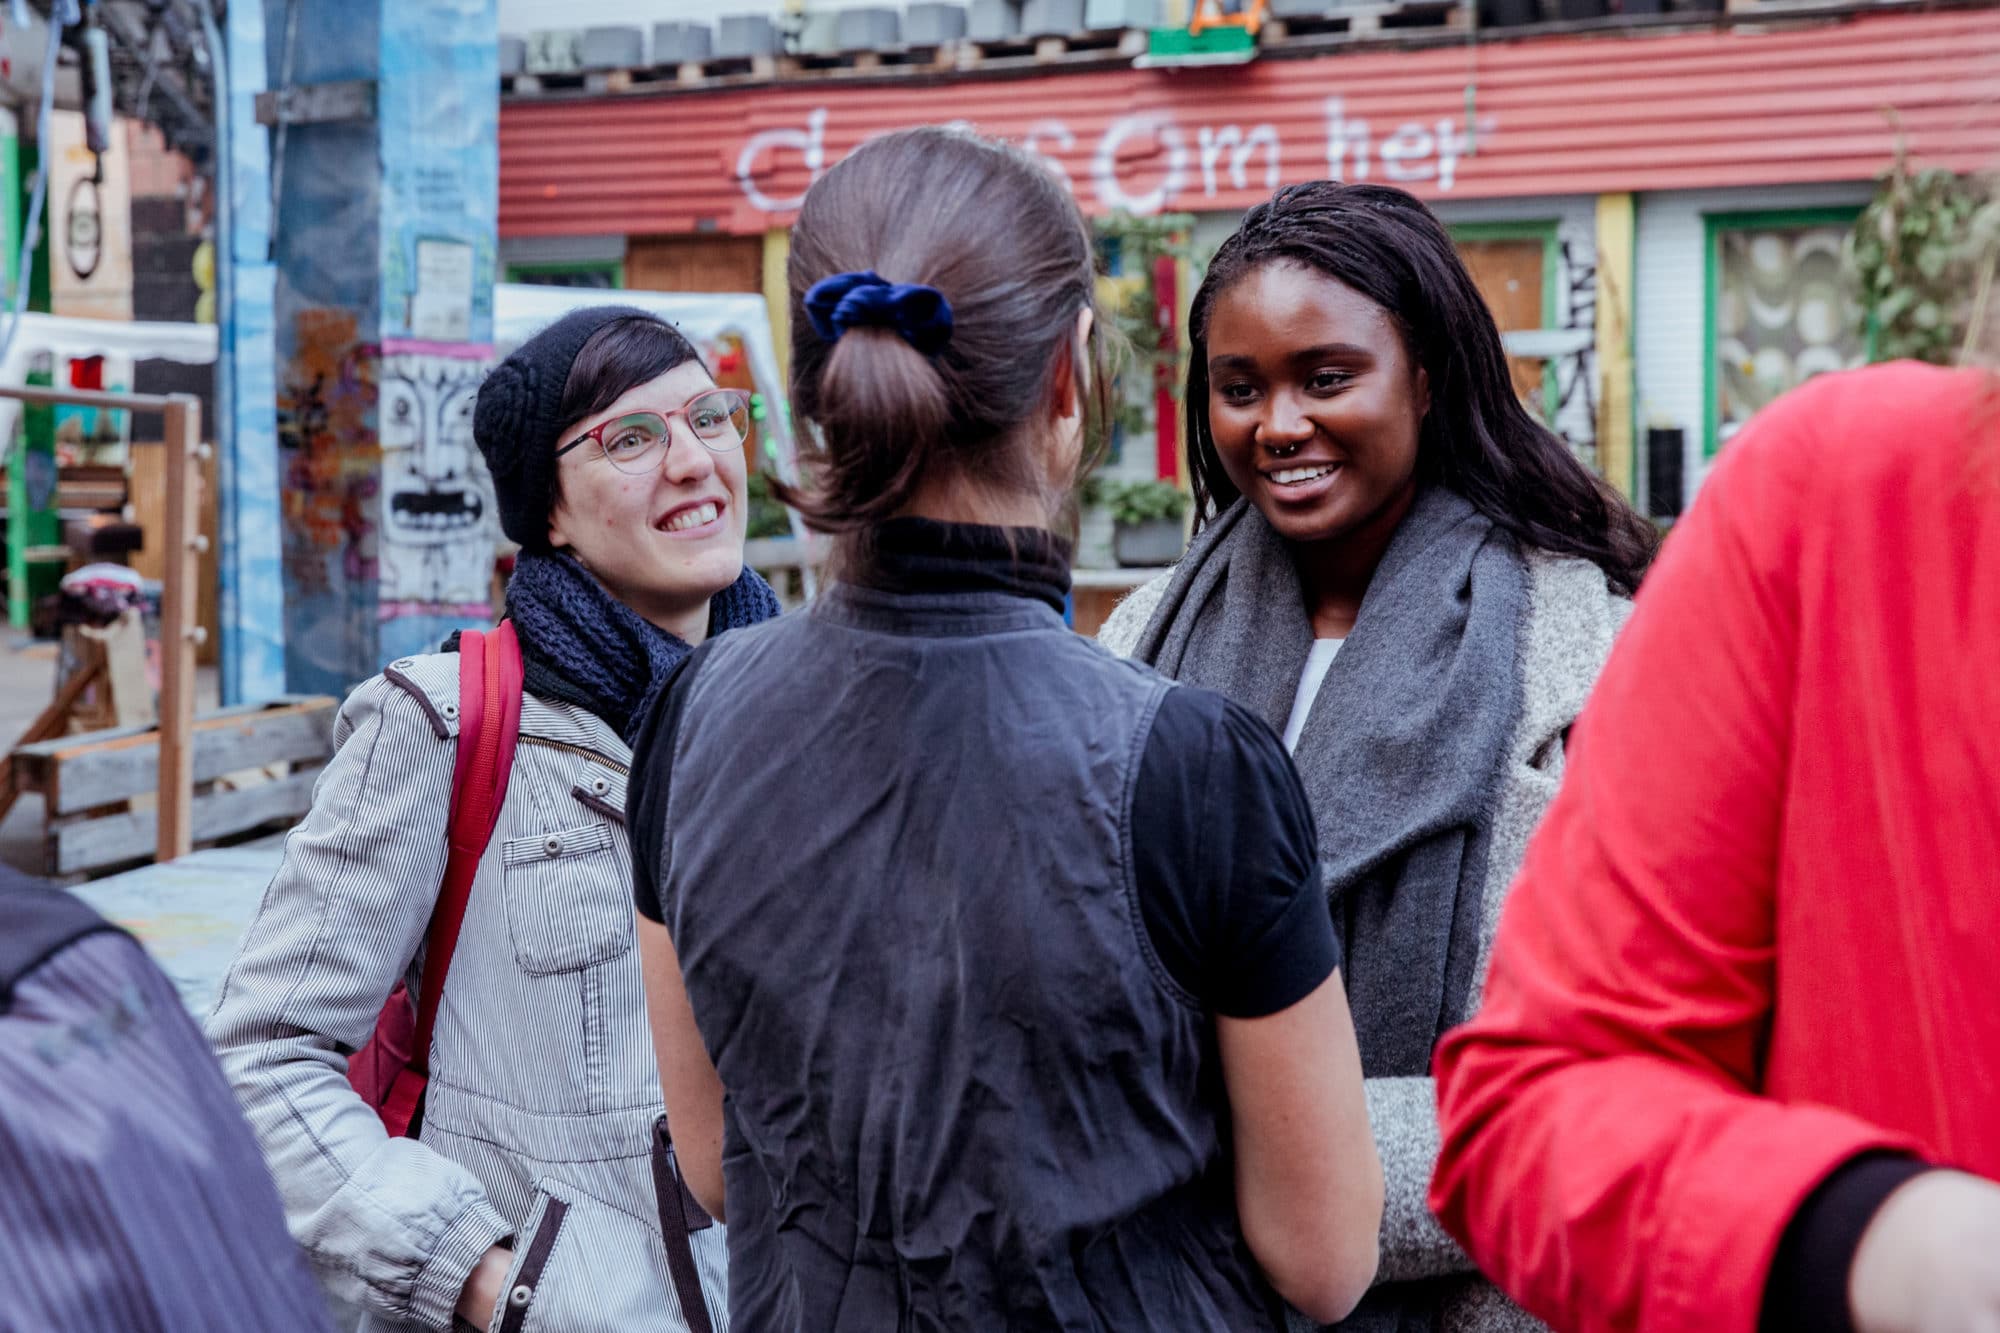 Fotografi. Bildet viser tre unge kvinner som prater sammen.